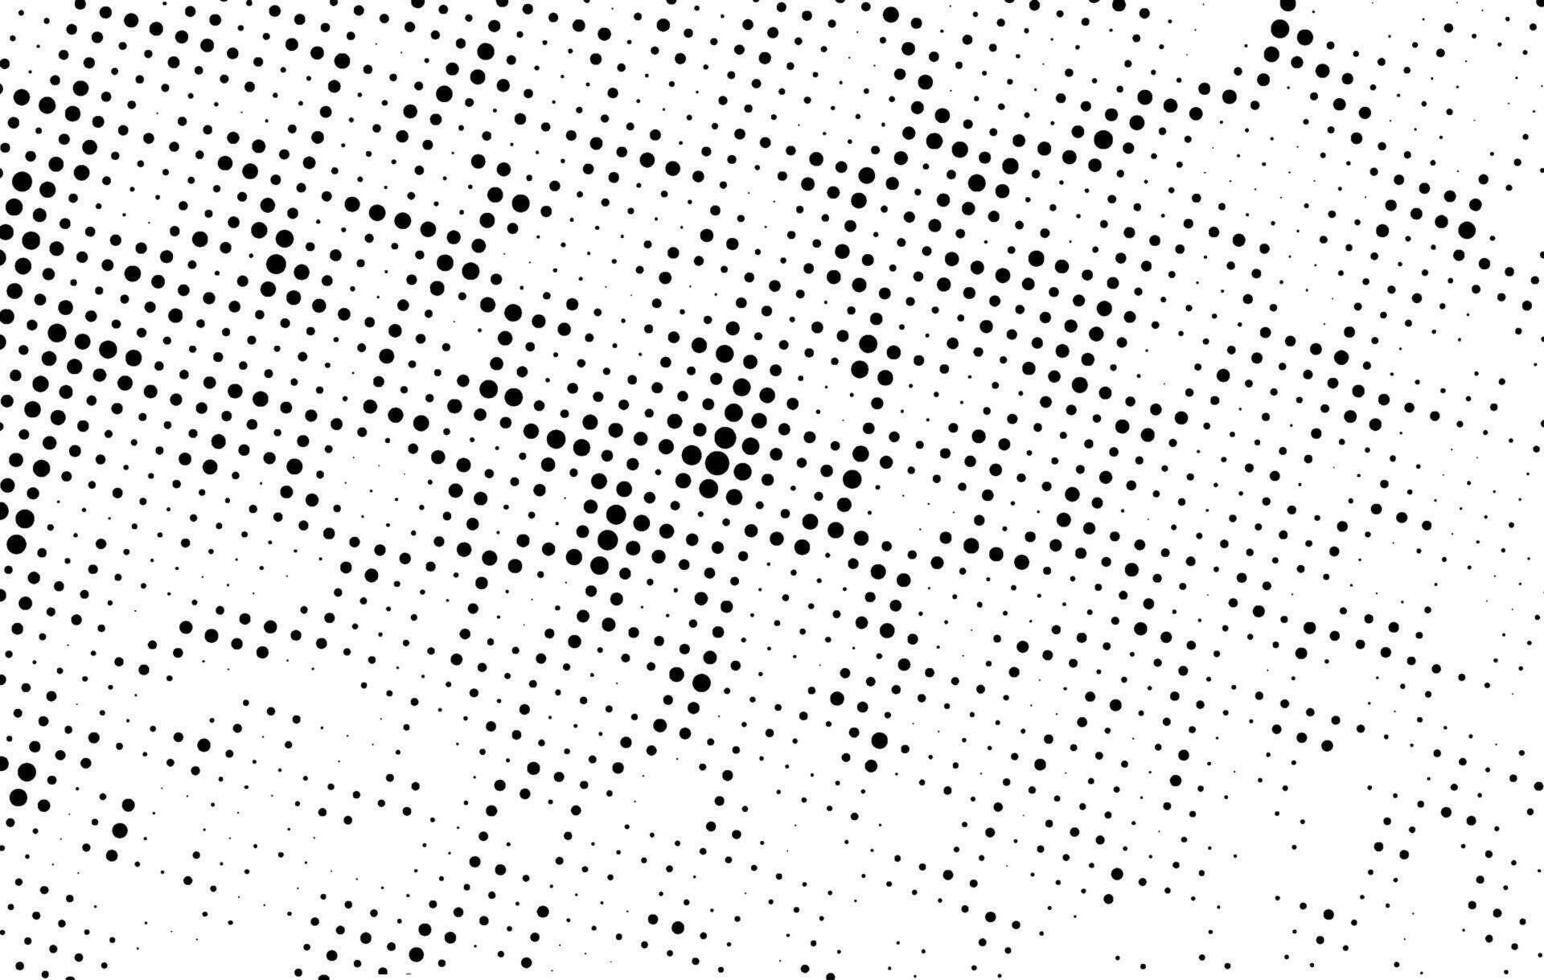 trama de semitonos punto modelo antecedentes vector, un conjunto de cuatro diferente resumen puntos patrones, un negro y blanco dibujo degradado puntos efecto, grunge efecto con redondo circulo adorar textura vector